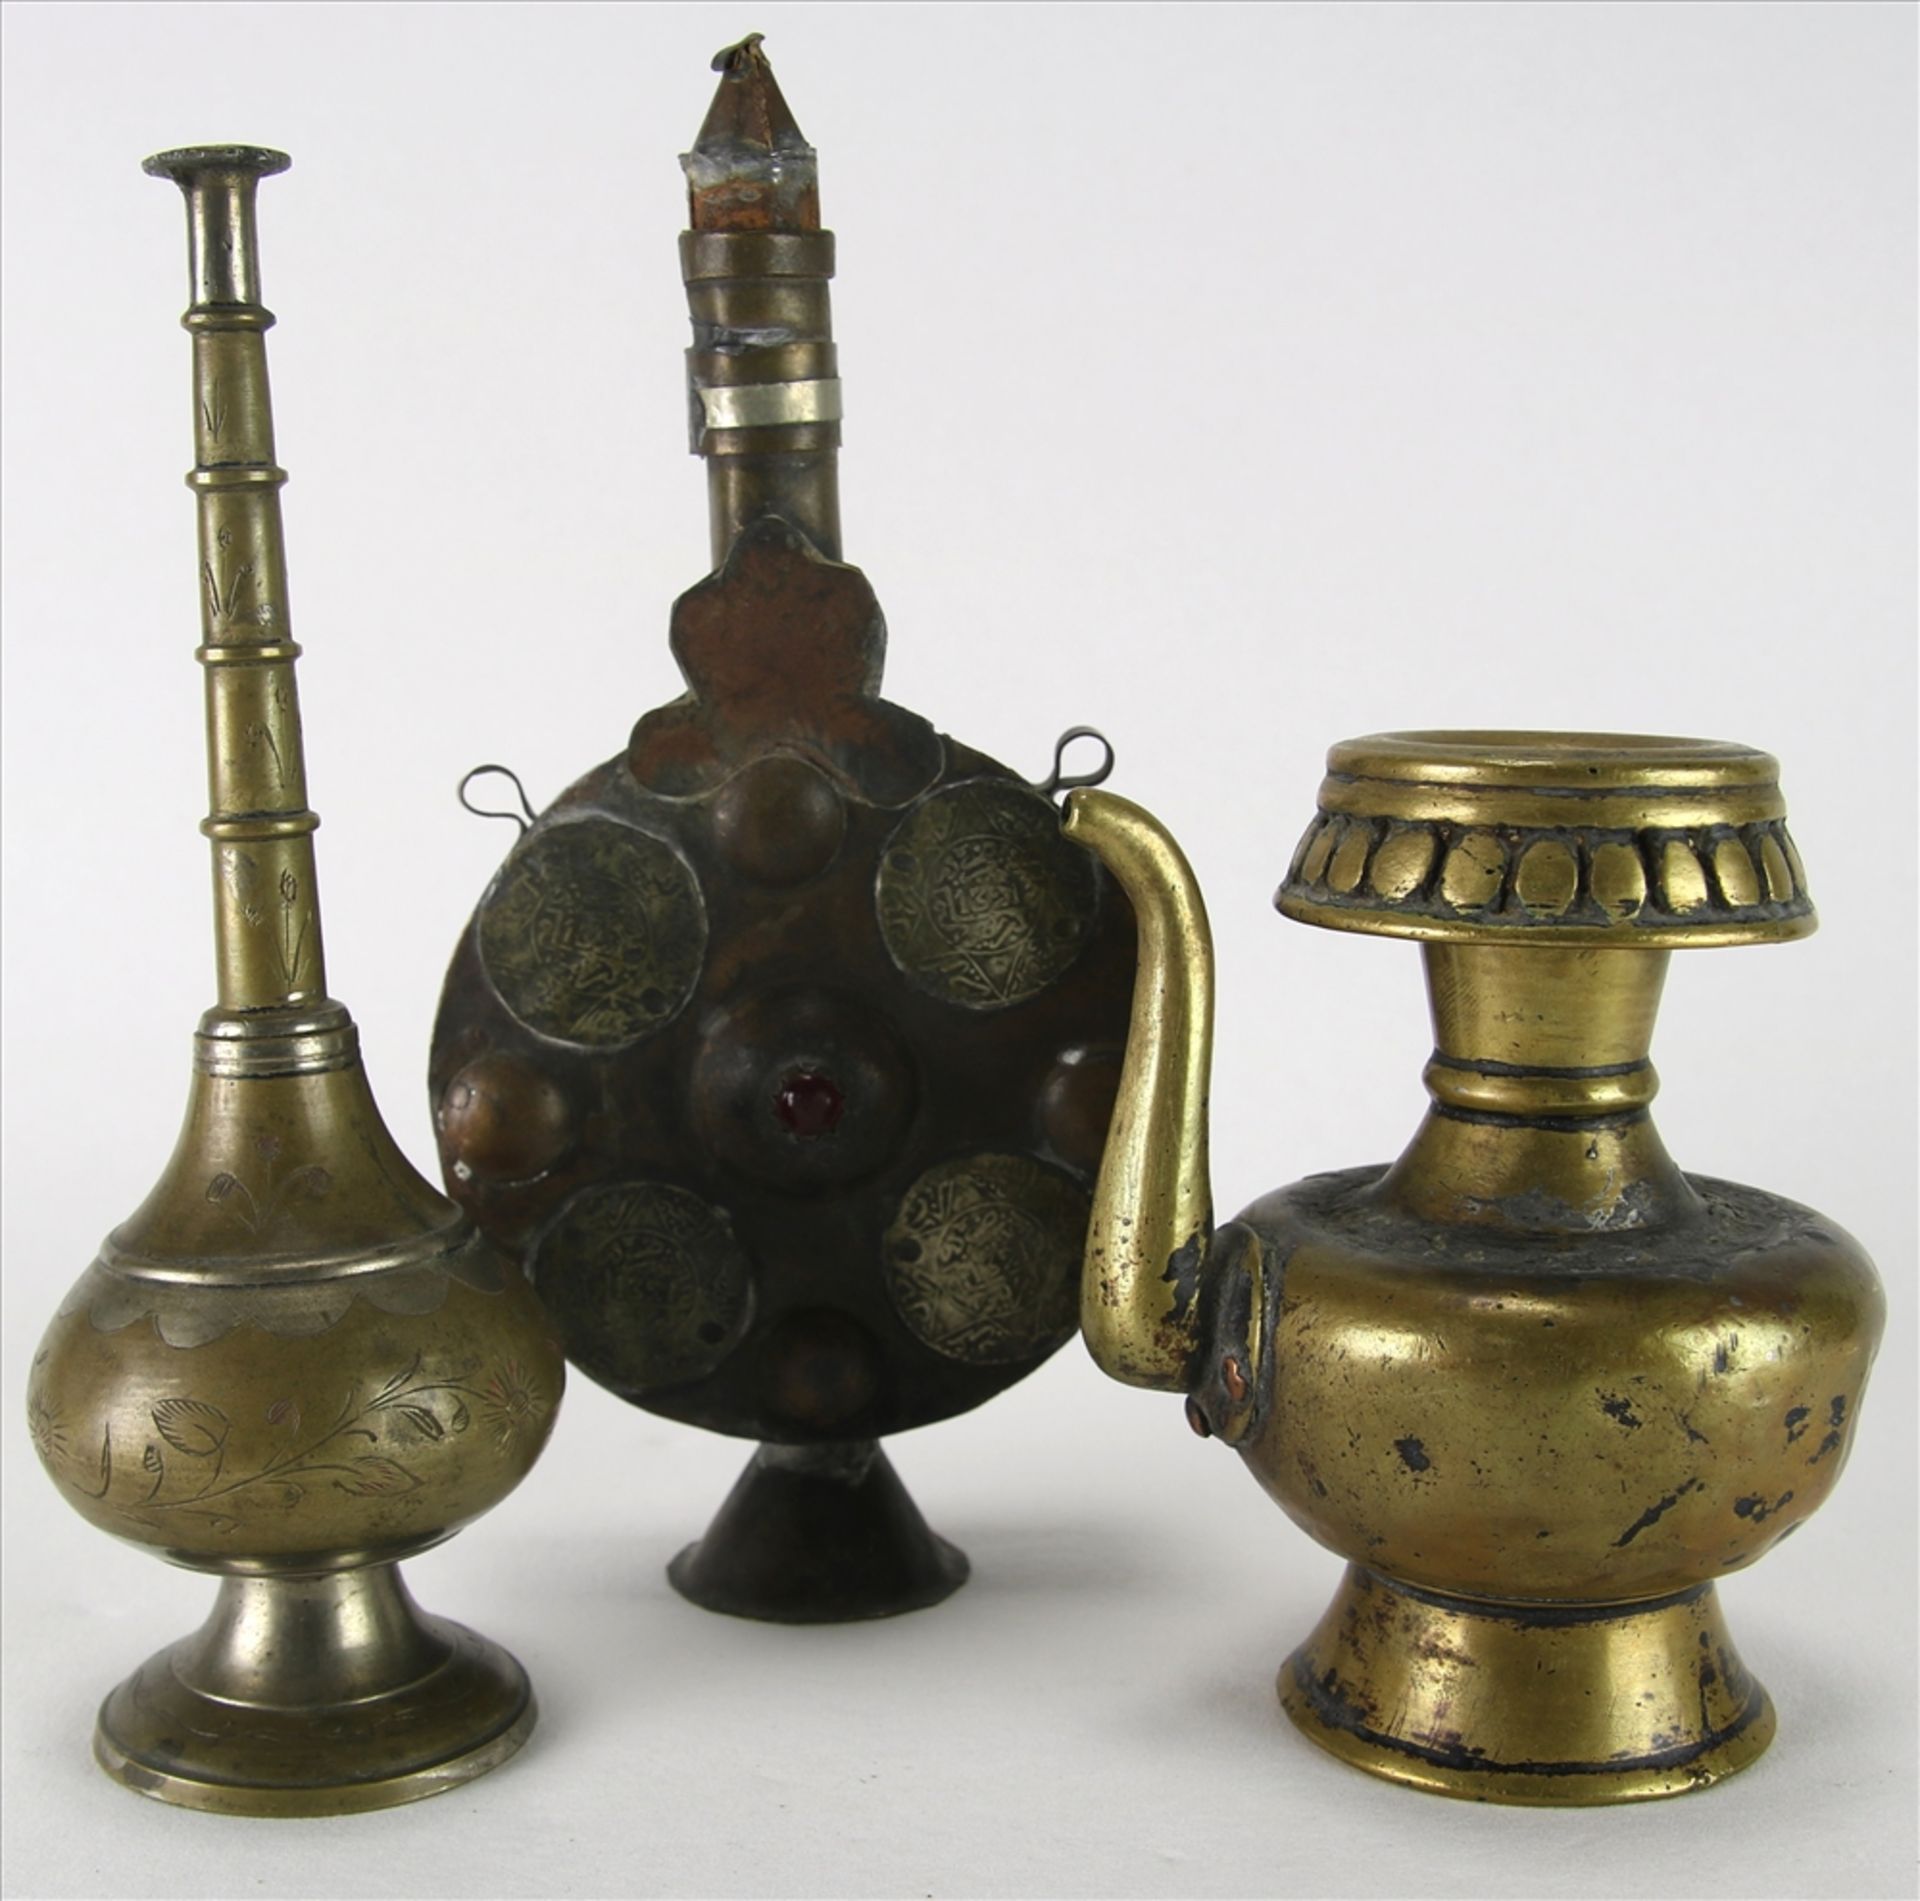 Drei Gefäße Islamische Herkunft um 1900. Diverse Ausführungen. Größtes Gefäß ca. 20 x 9,5 cm.